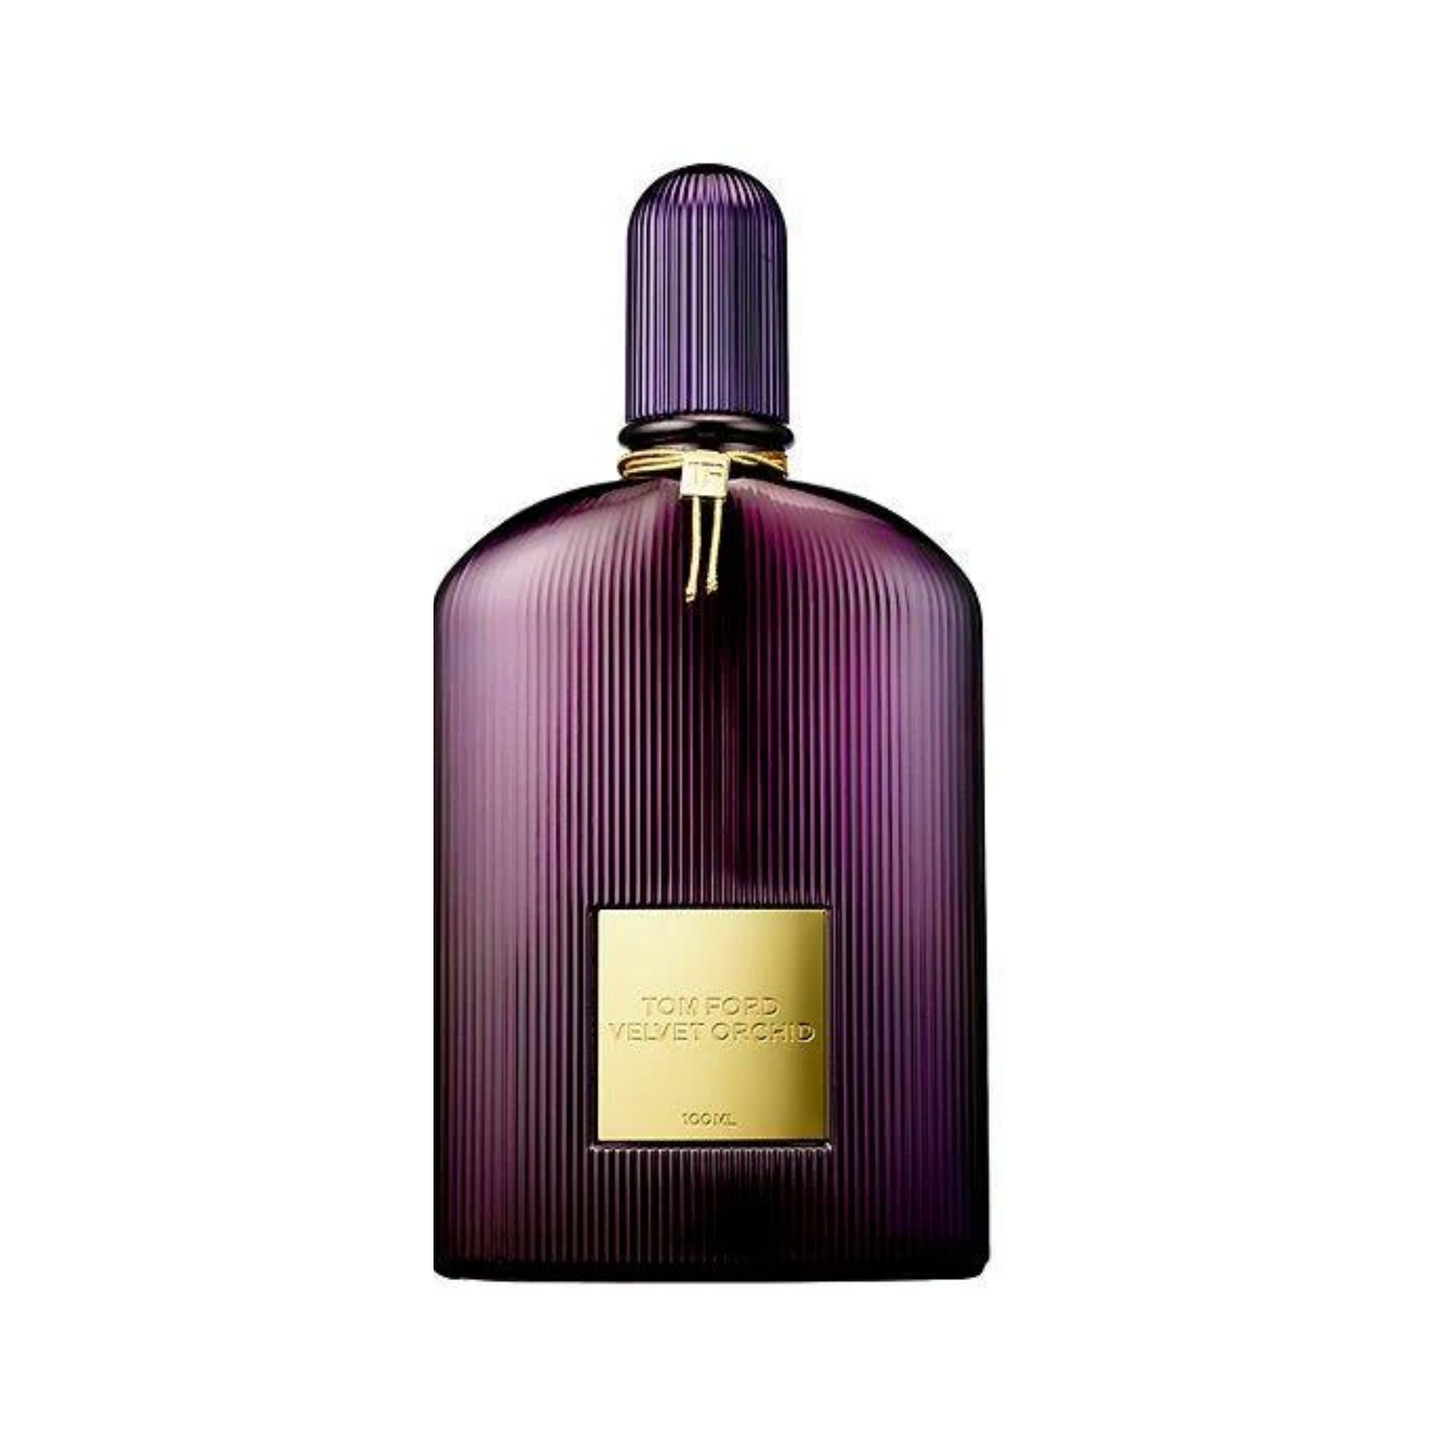 Tom Ford Velvet Orchid type Perfume for Women